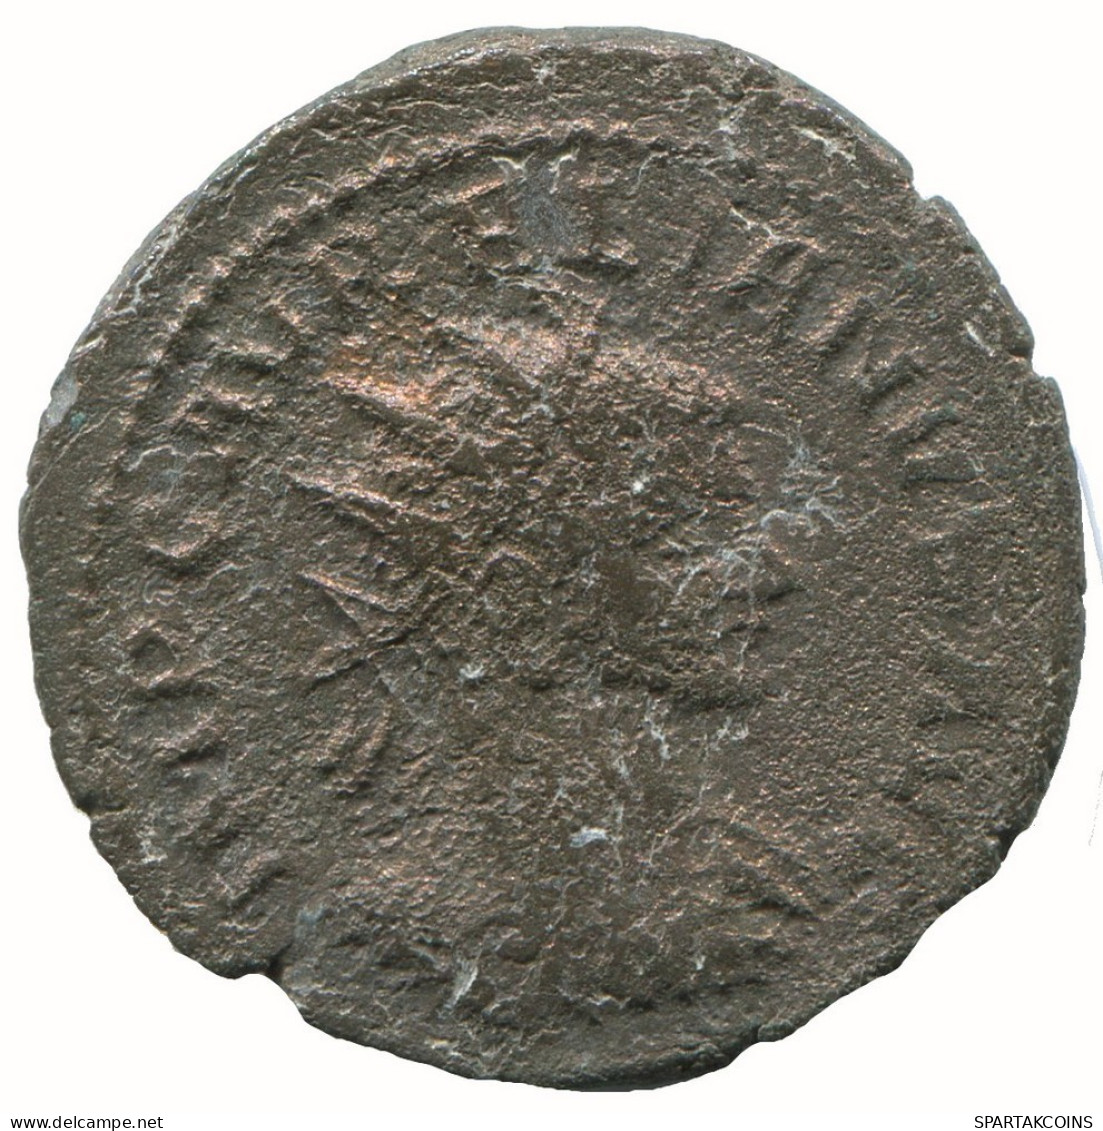 AURELIAN ANTONINIANUS Cyzicus ϵ AD347 Restitutorbis 3.9g/23mm #NNN1701.18.F.A - Der Soldatenkaiser (die Militärkrise) (235 / 284)